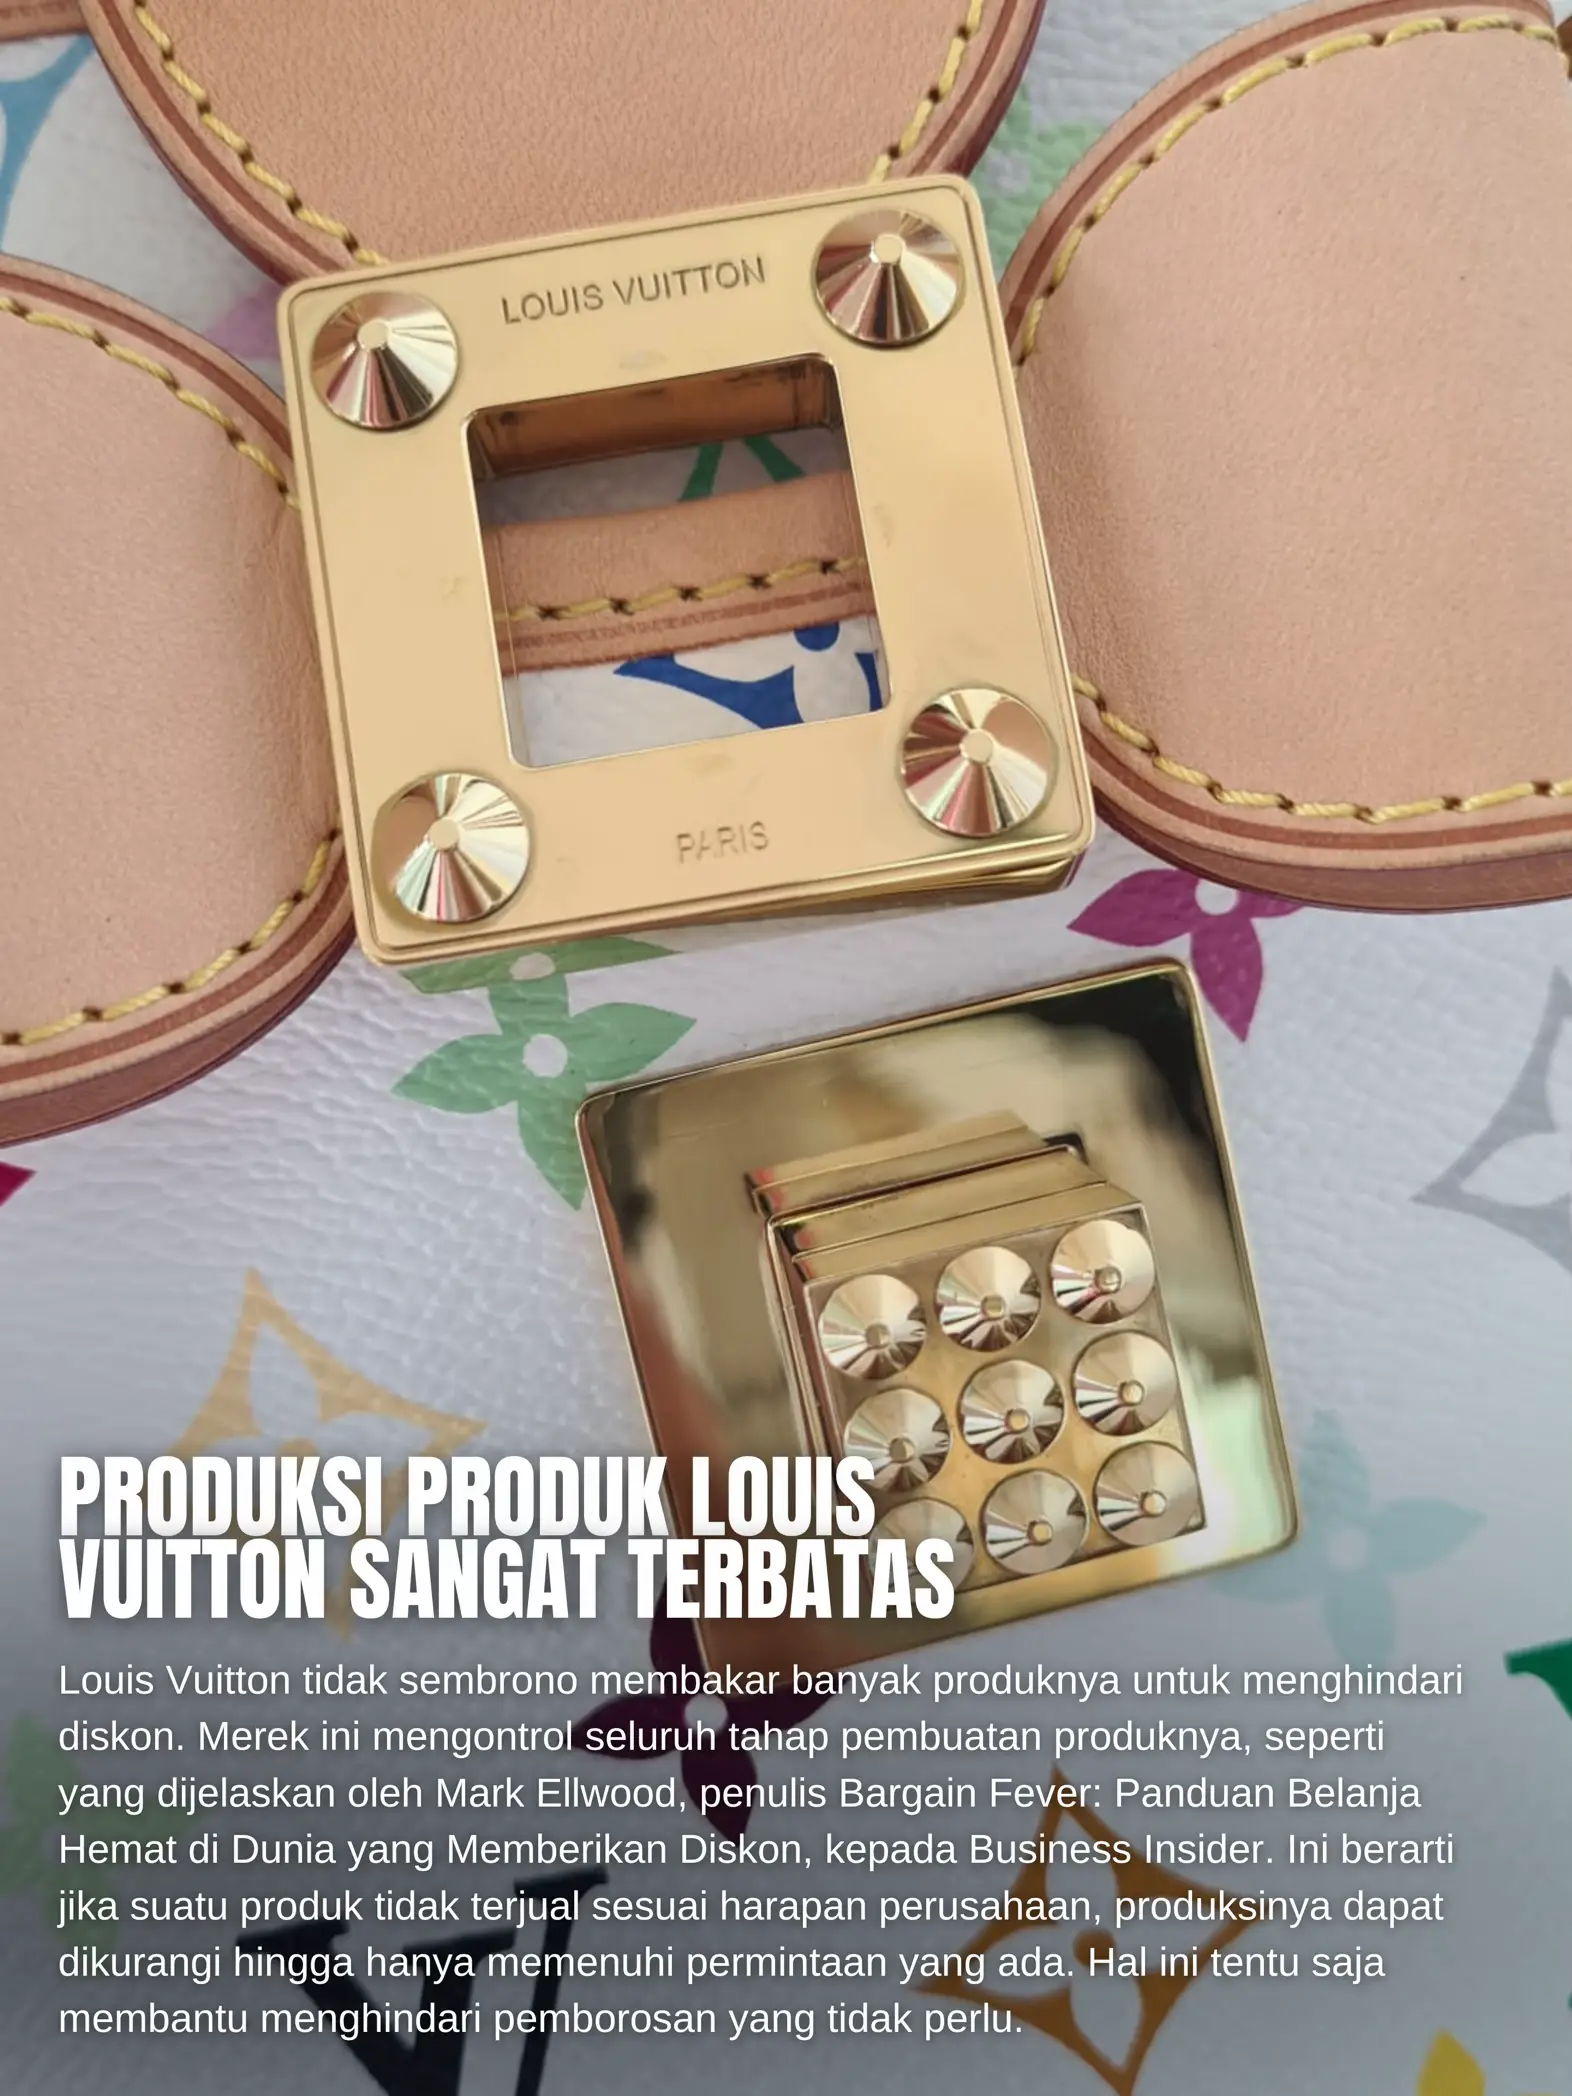 Jangan beli Louis Vuitton, sebelum membaca ini!, Gallery posted by  Natasshanjani